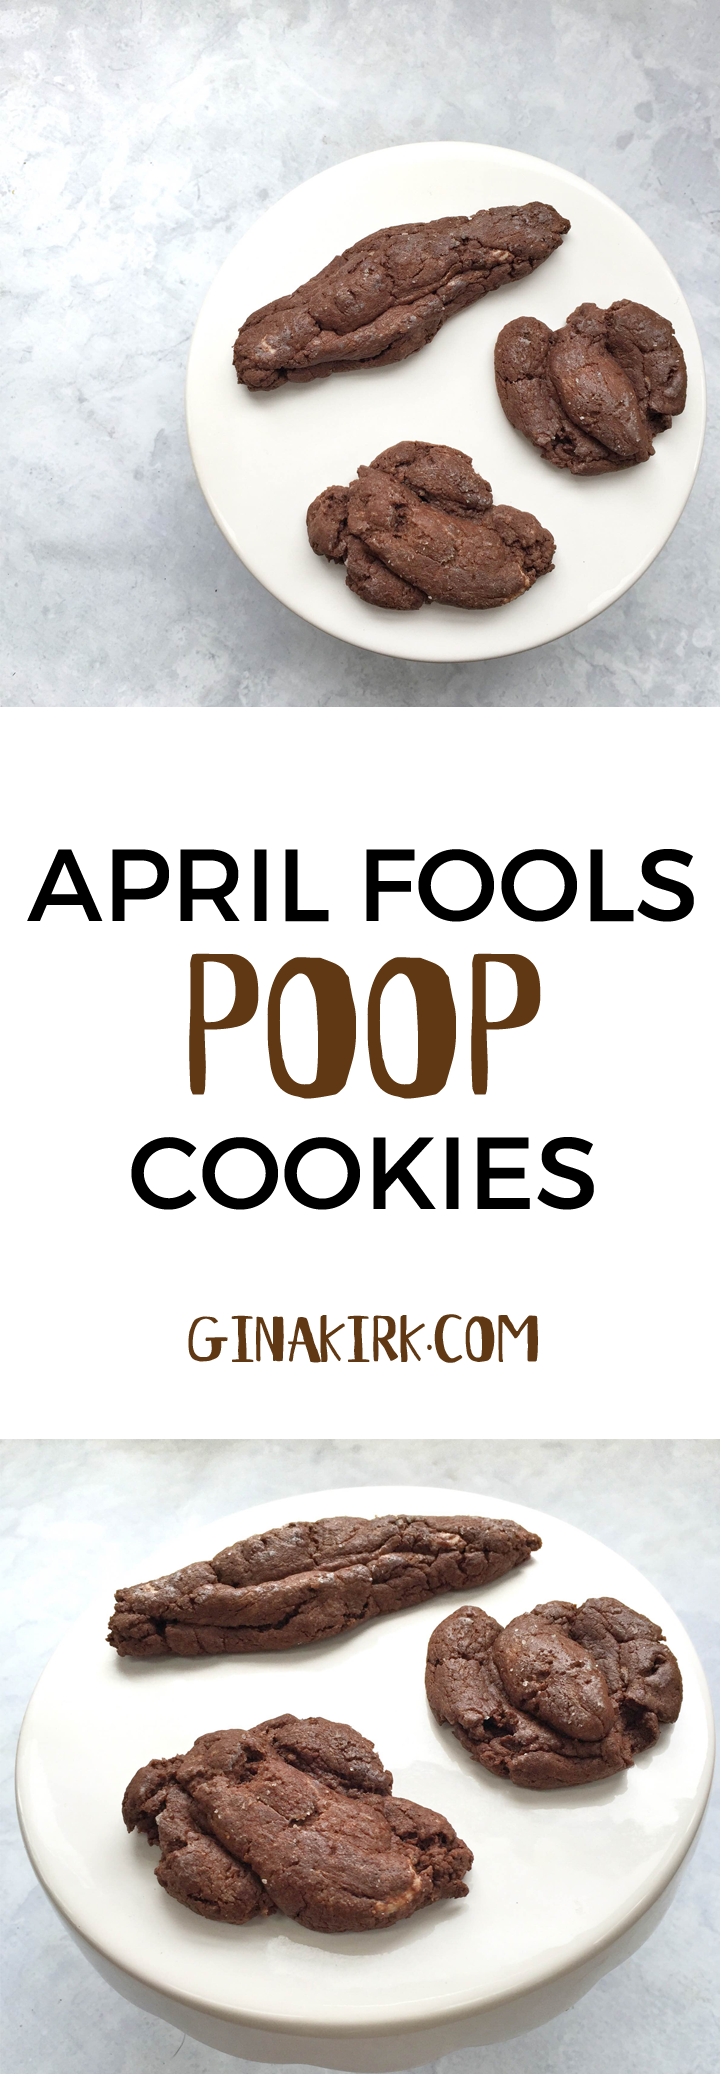 April fools' day poop cookies | poop cookie recipe | food pranks | April fools' day recipes | April fools' day pranks for kids GinaKirk.com @ginaekirk